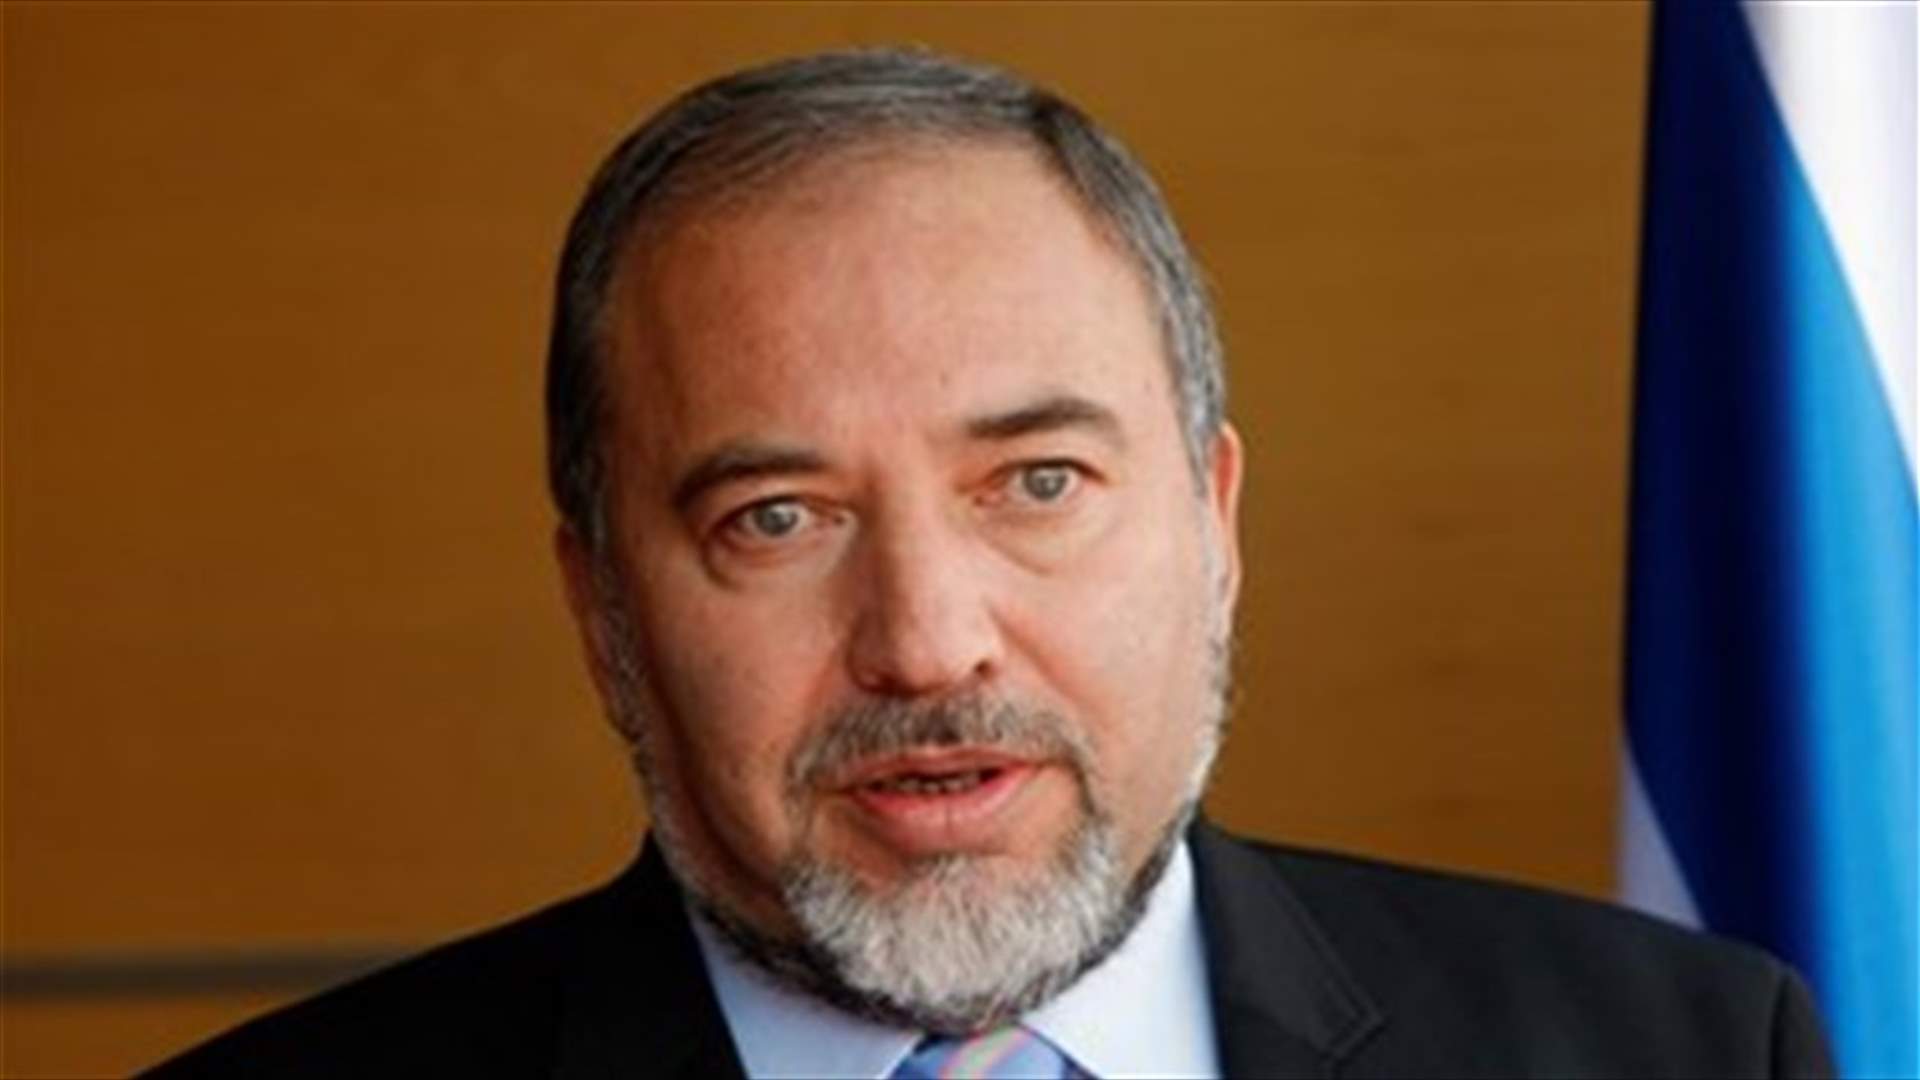 Israel defense minister says hopes Palestinian protests waning